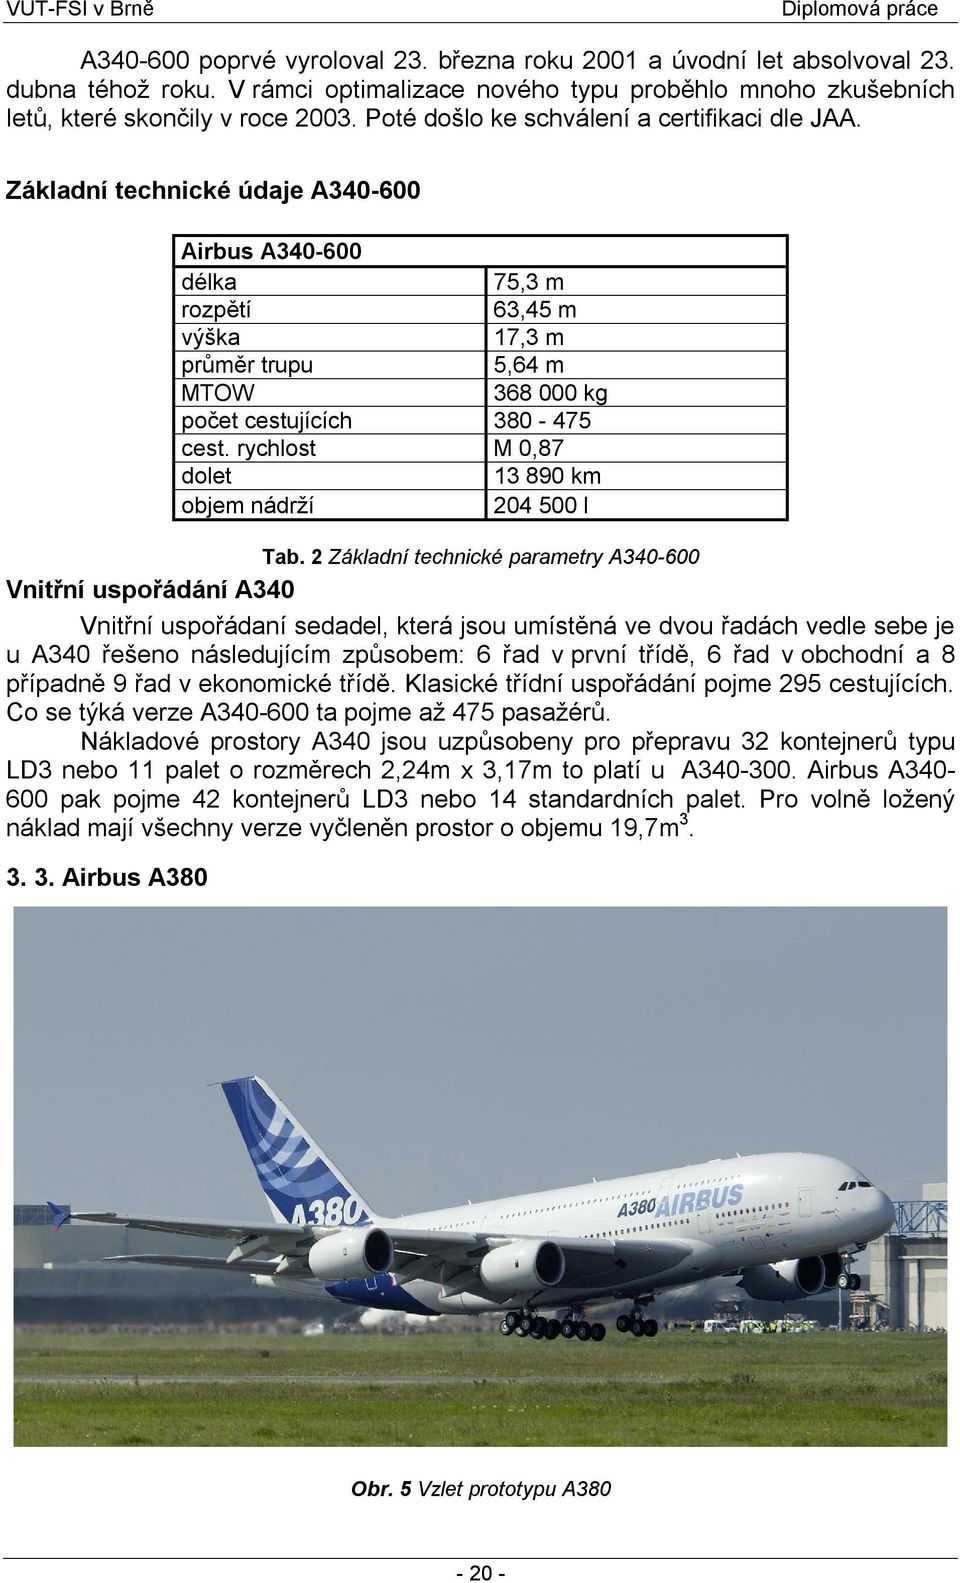 Základní technické údaje A340-600 Airbus A340-600 délka 75,3 m rozpětí 63,45 m výška 17,3 m průměr trupu 5,64 m MTOW 368 000 kg počet cestujících 380-475 cest.